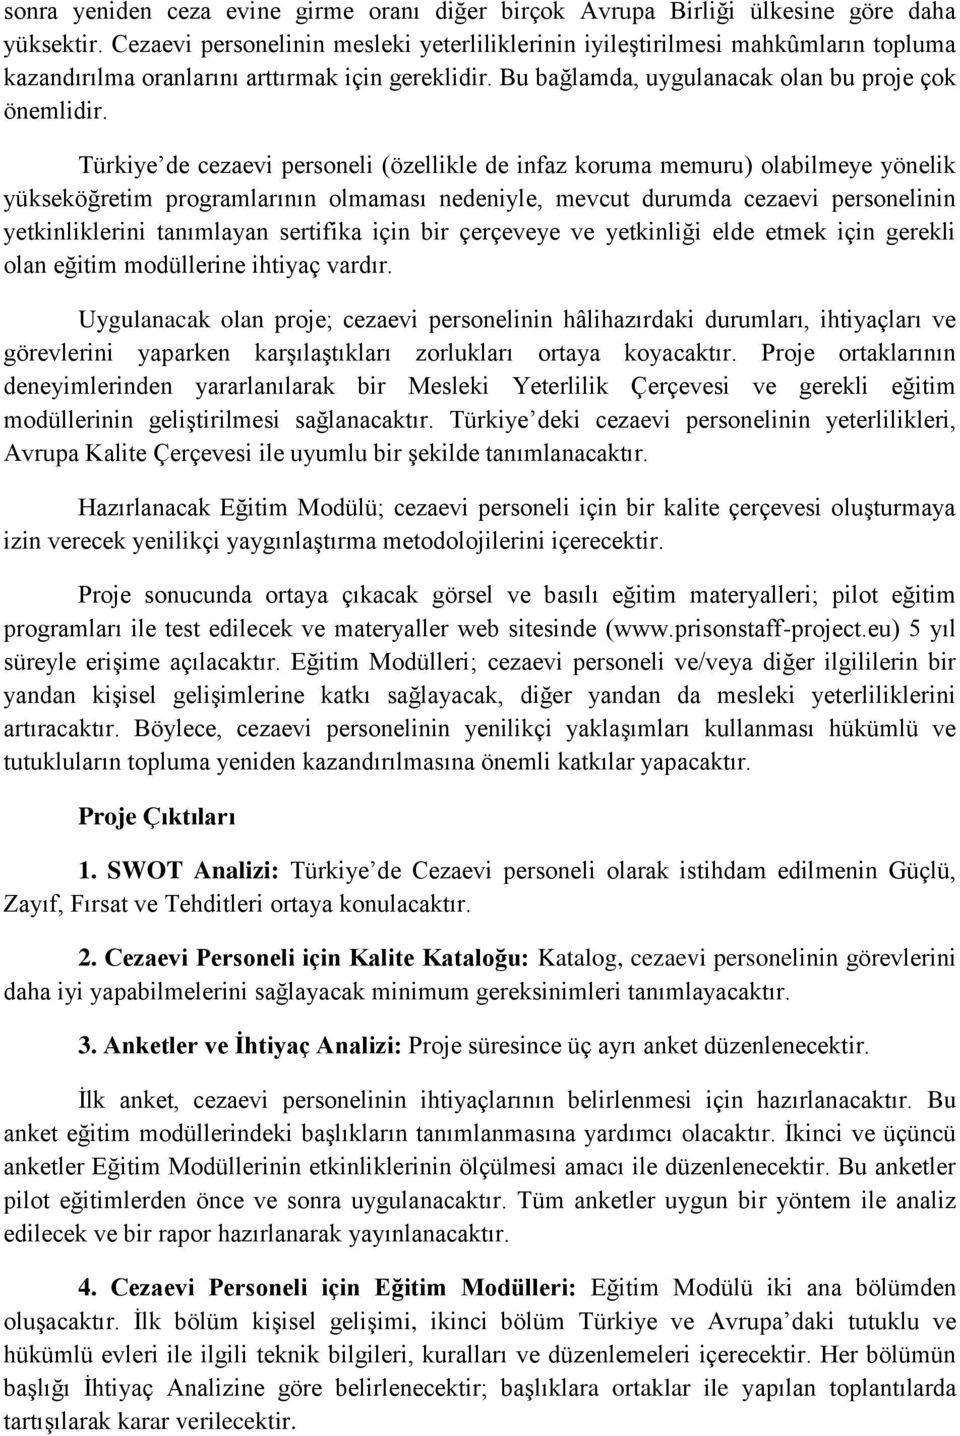 Türkiye de cezaevi personeli (özellikle de infaz koruma memuru) olabilmeye yönelik yükseköğretim programlarının olmaması nedeniyle, mevcut durumda cezaevi personelinin yetkinliklerini tanımlayan